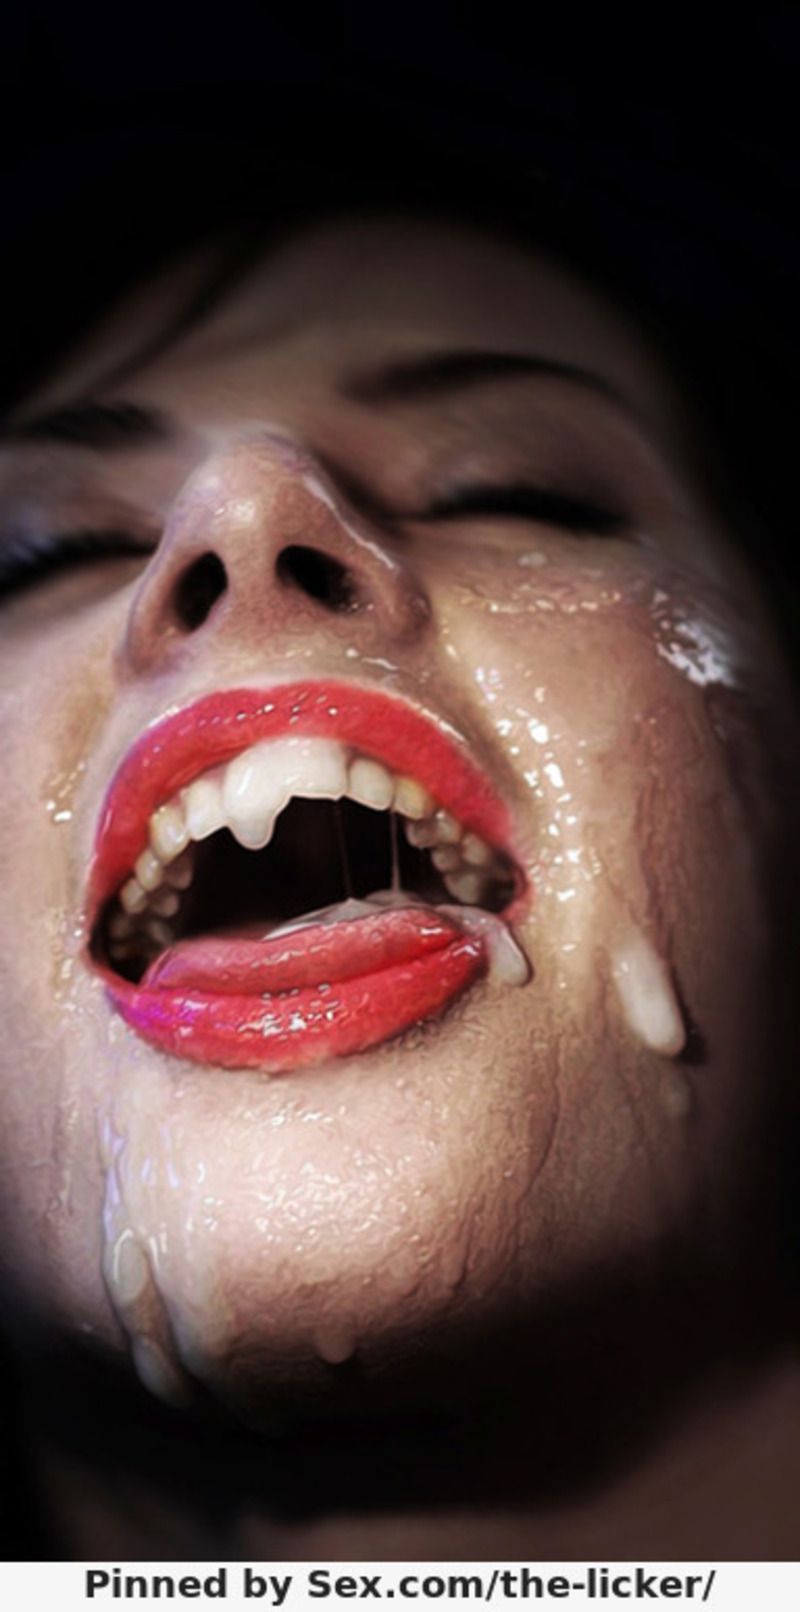 женских губ в сперме фото 64